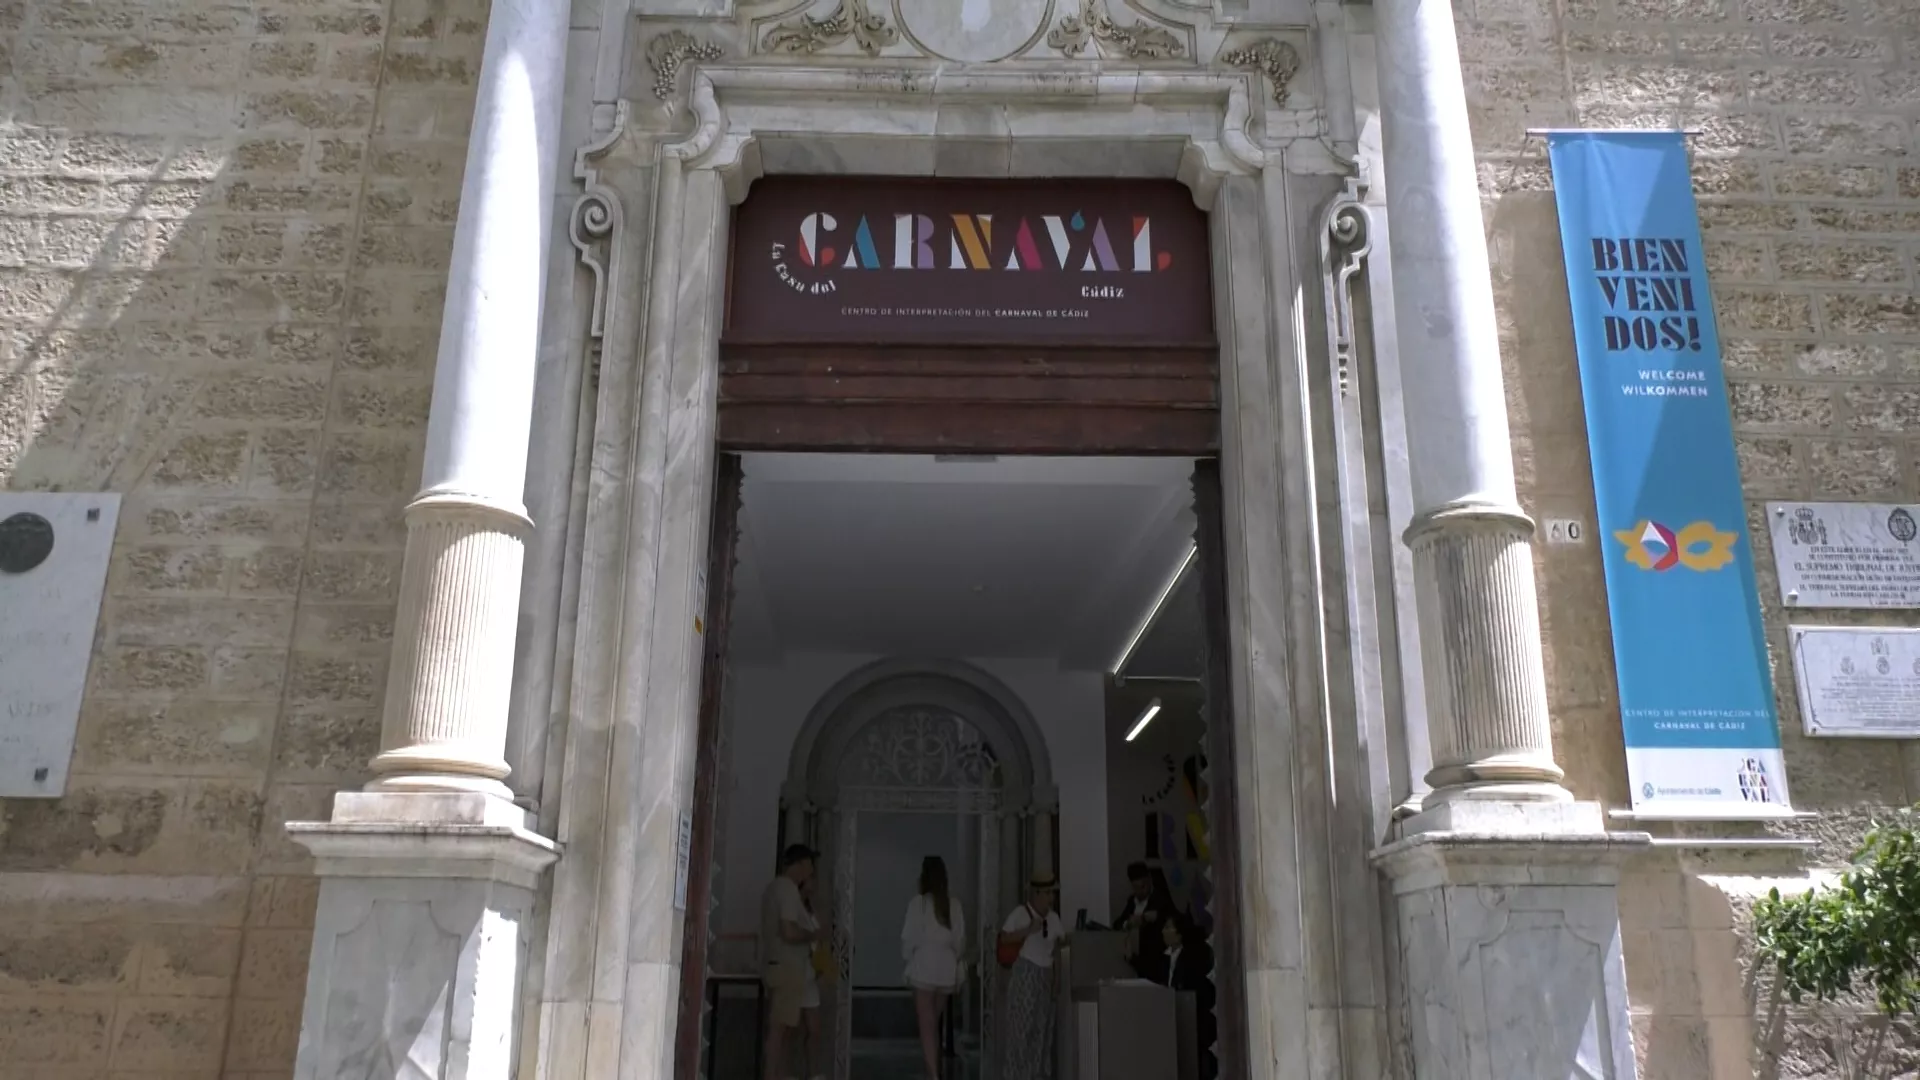 El Ayuntamiento estudia con colectivos y expertos los contenidos para llenar la Casa del Carnaval